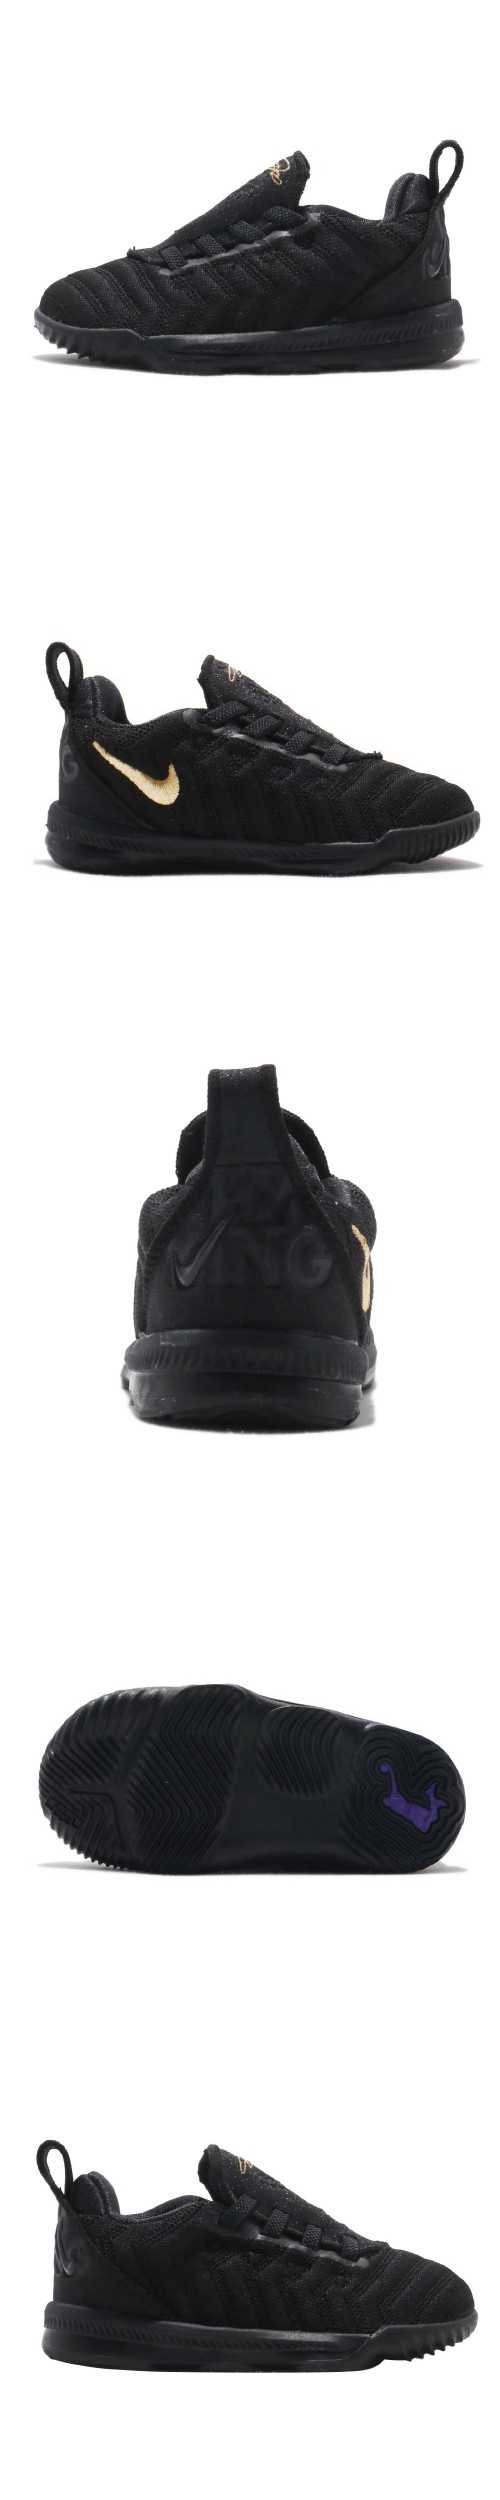 Nike 籃球鞋 LeBron XVI TD 小童鞋